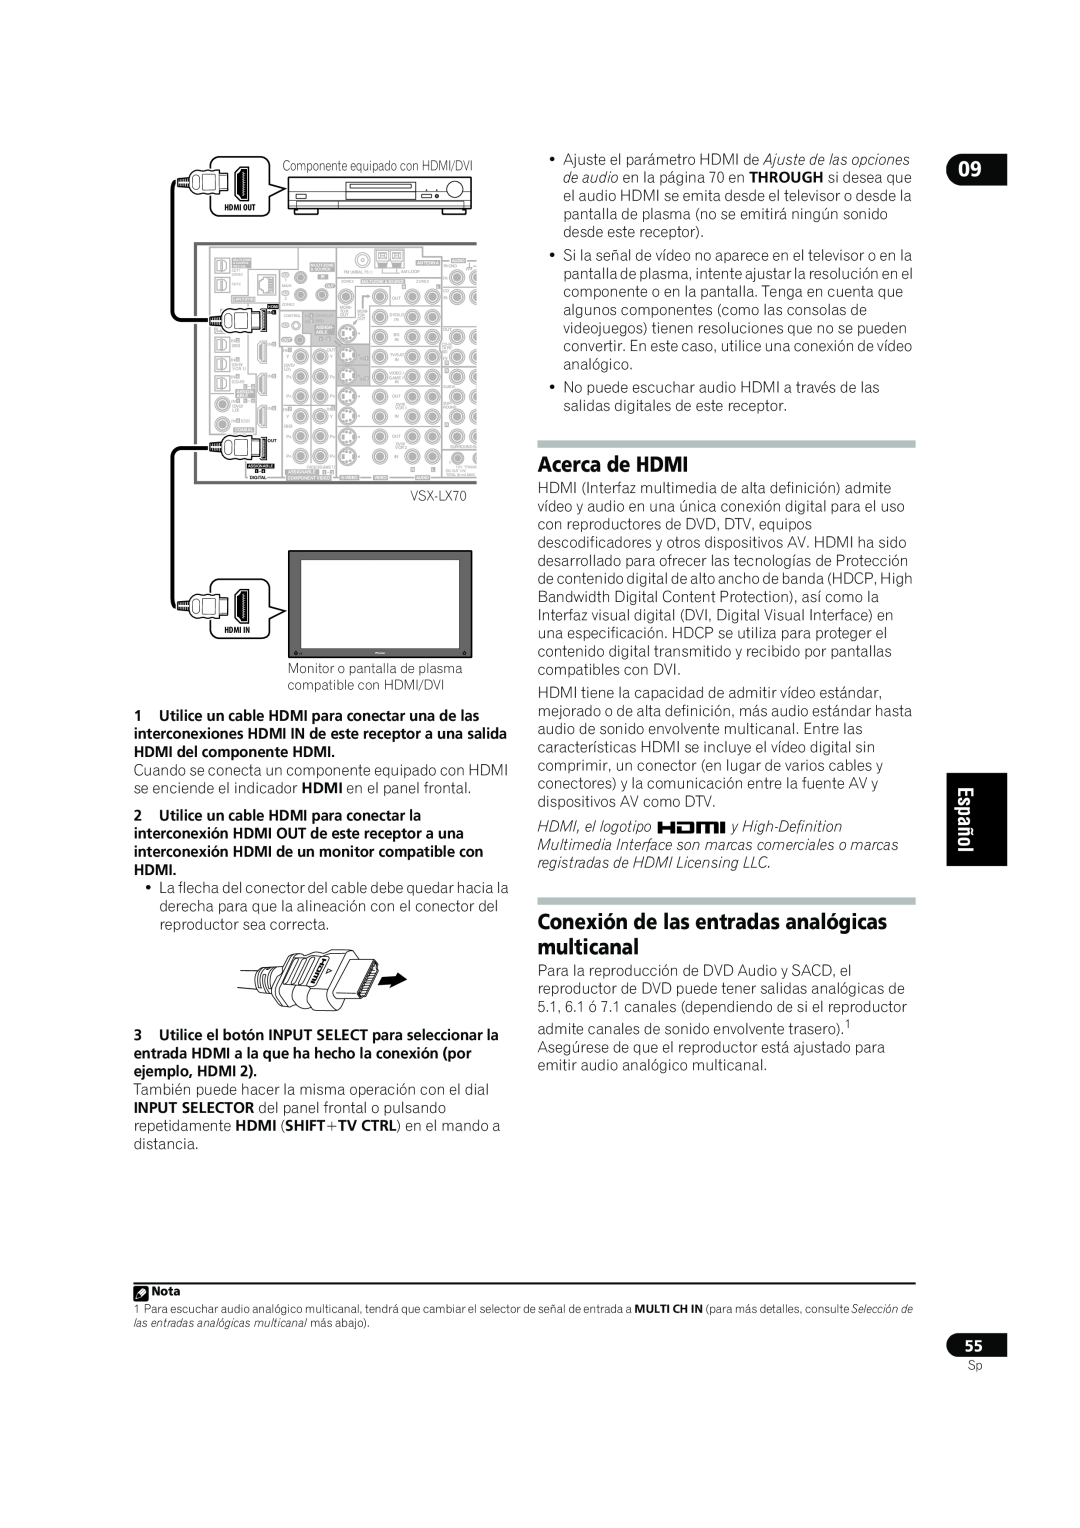 Bernina VSX-LX70, VSX-LX60 manual Acerca de HDMI, HDMI, el logotipo, y High-Definition, registradas de HDMI Licensing LLC 